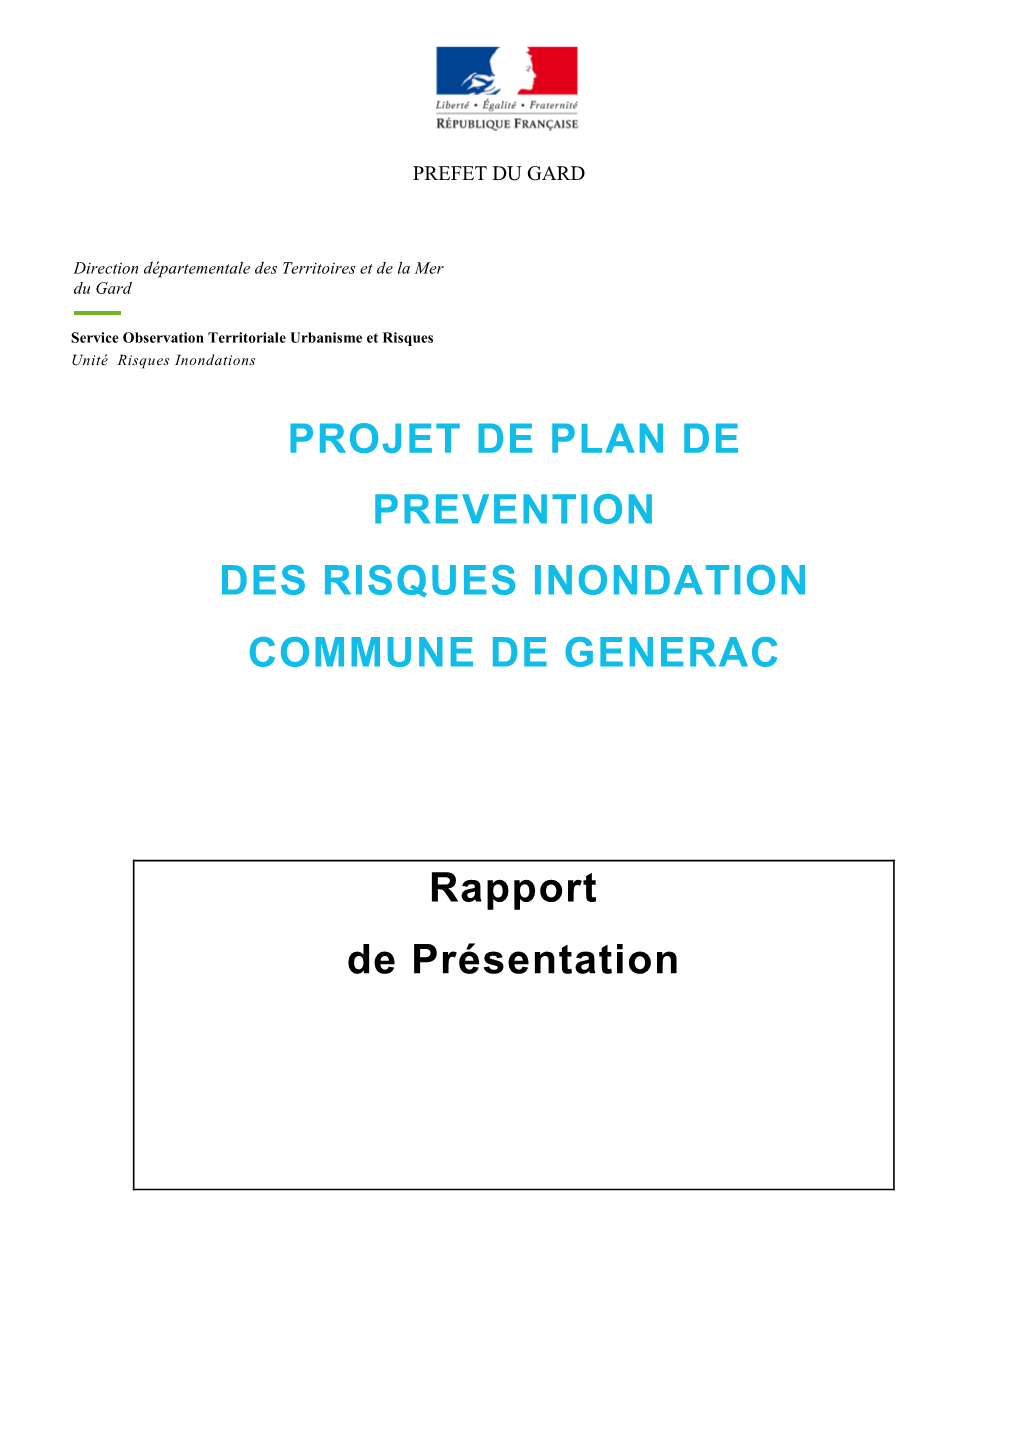 PROJET DE PLAN DE PREVENTION DES RISQUES INONDATION COMMUNE DE GENERAC Rapport De Présentation